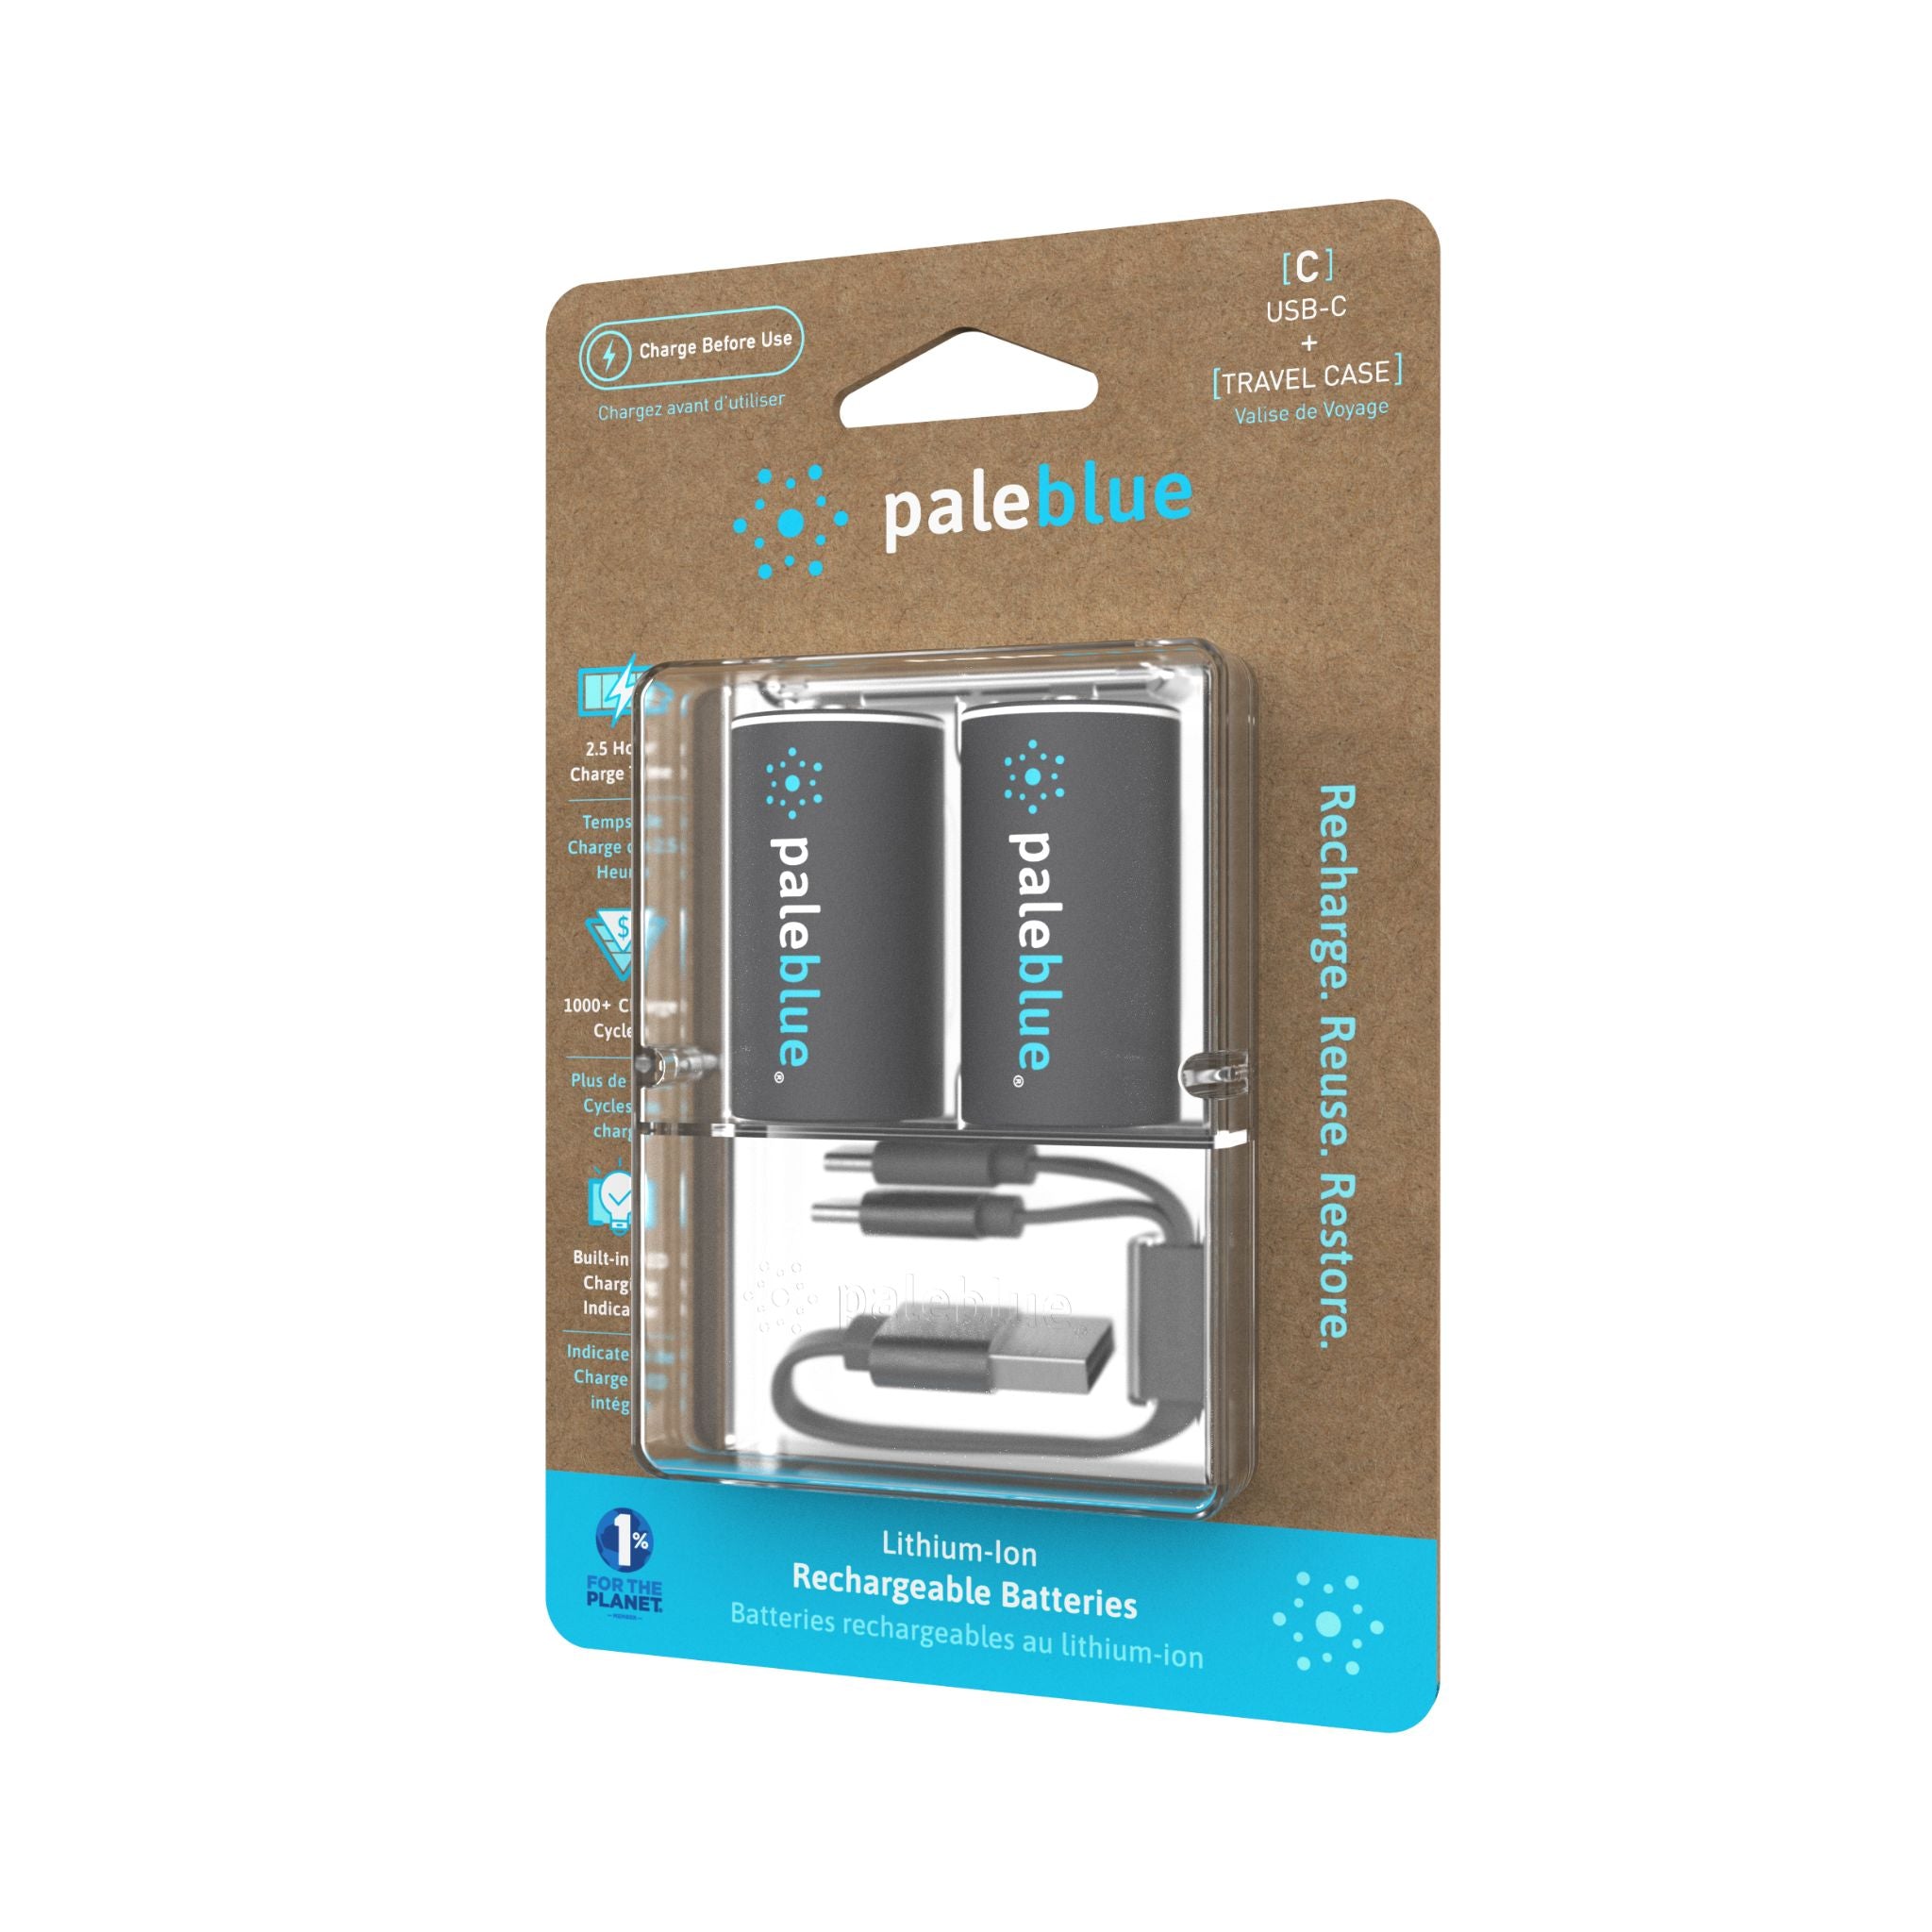 C USB-C Rechargeable Smart Batteries